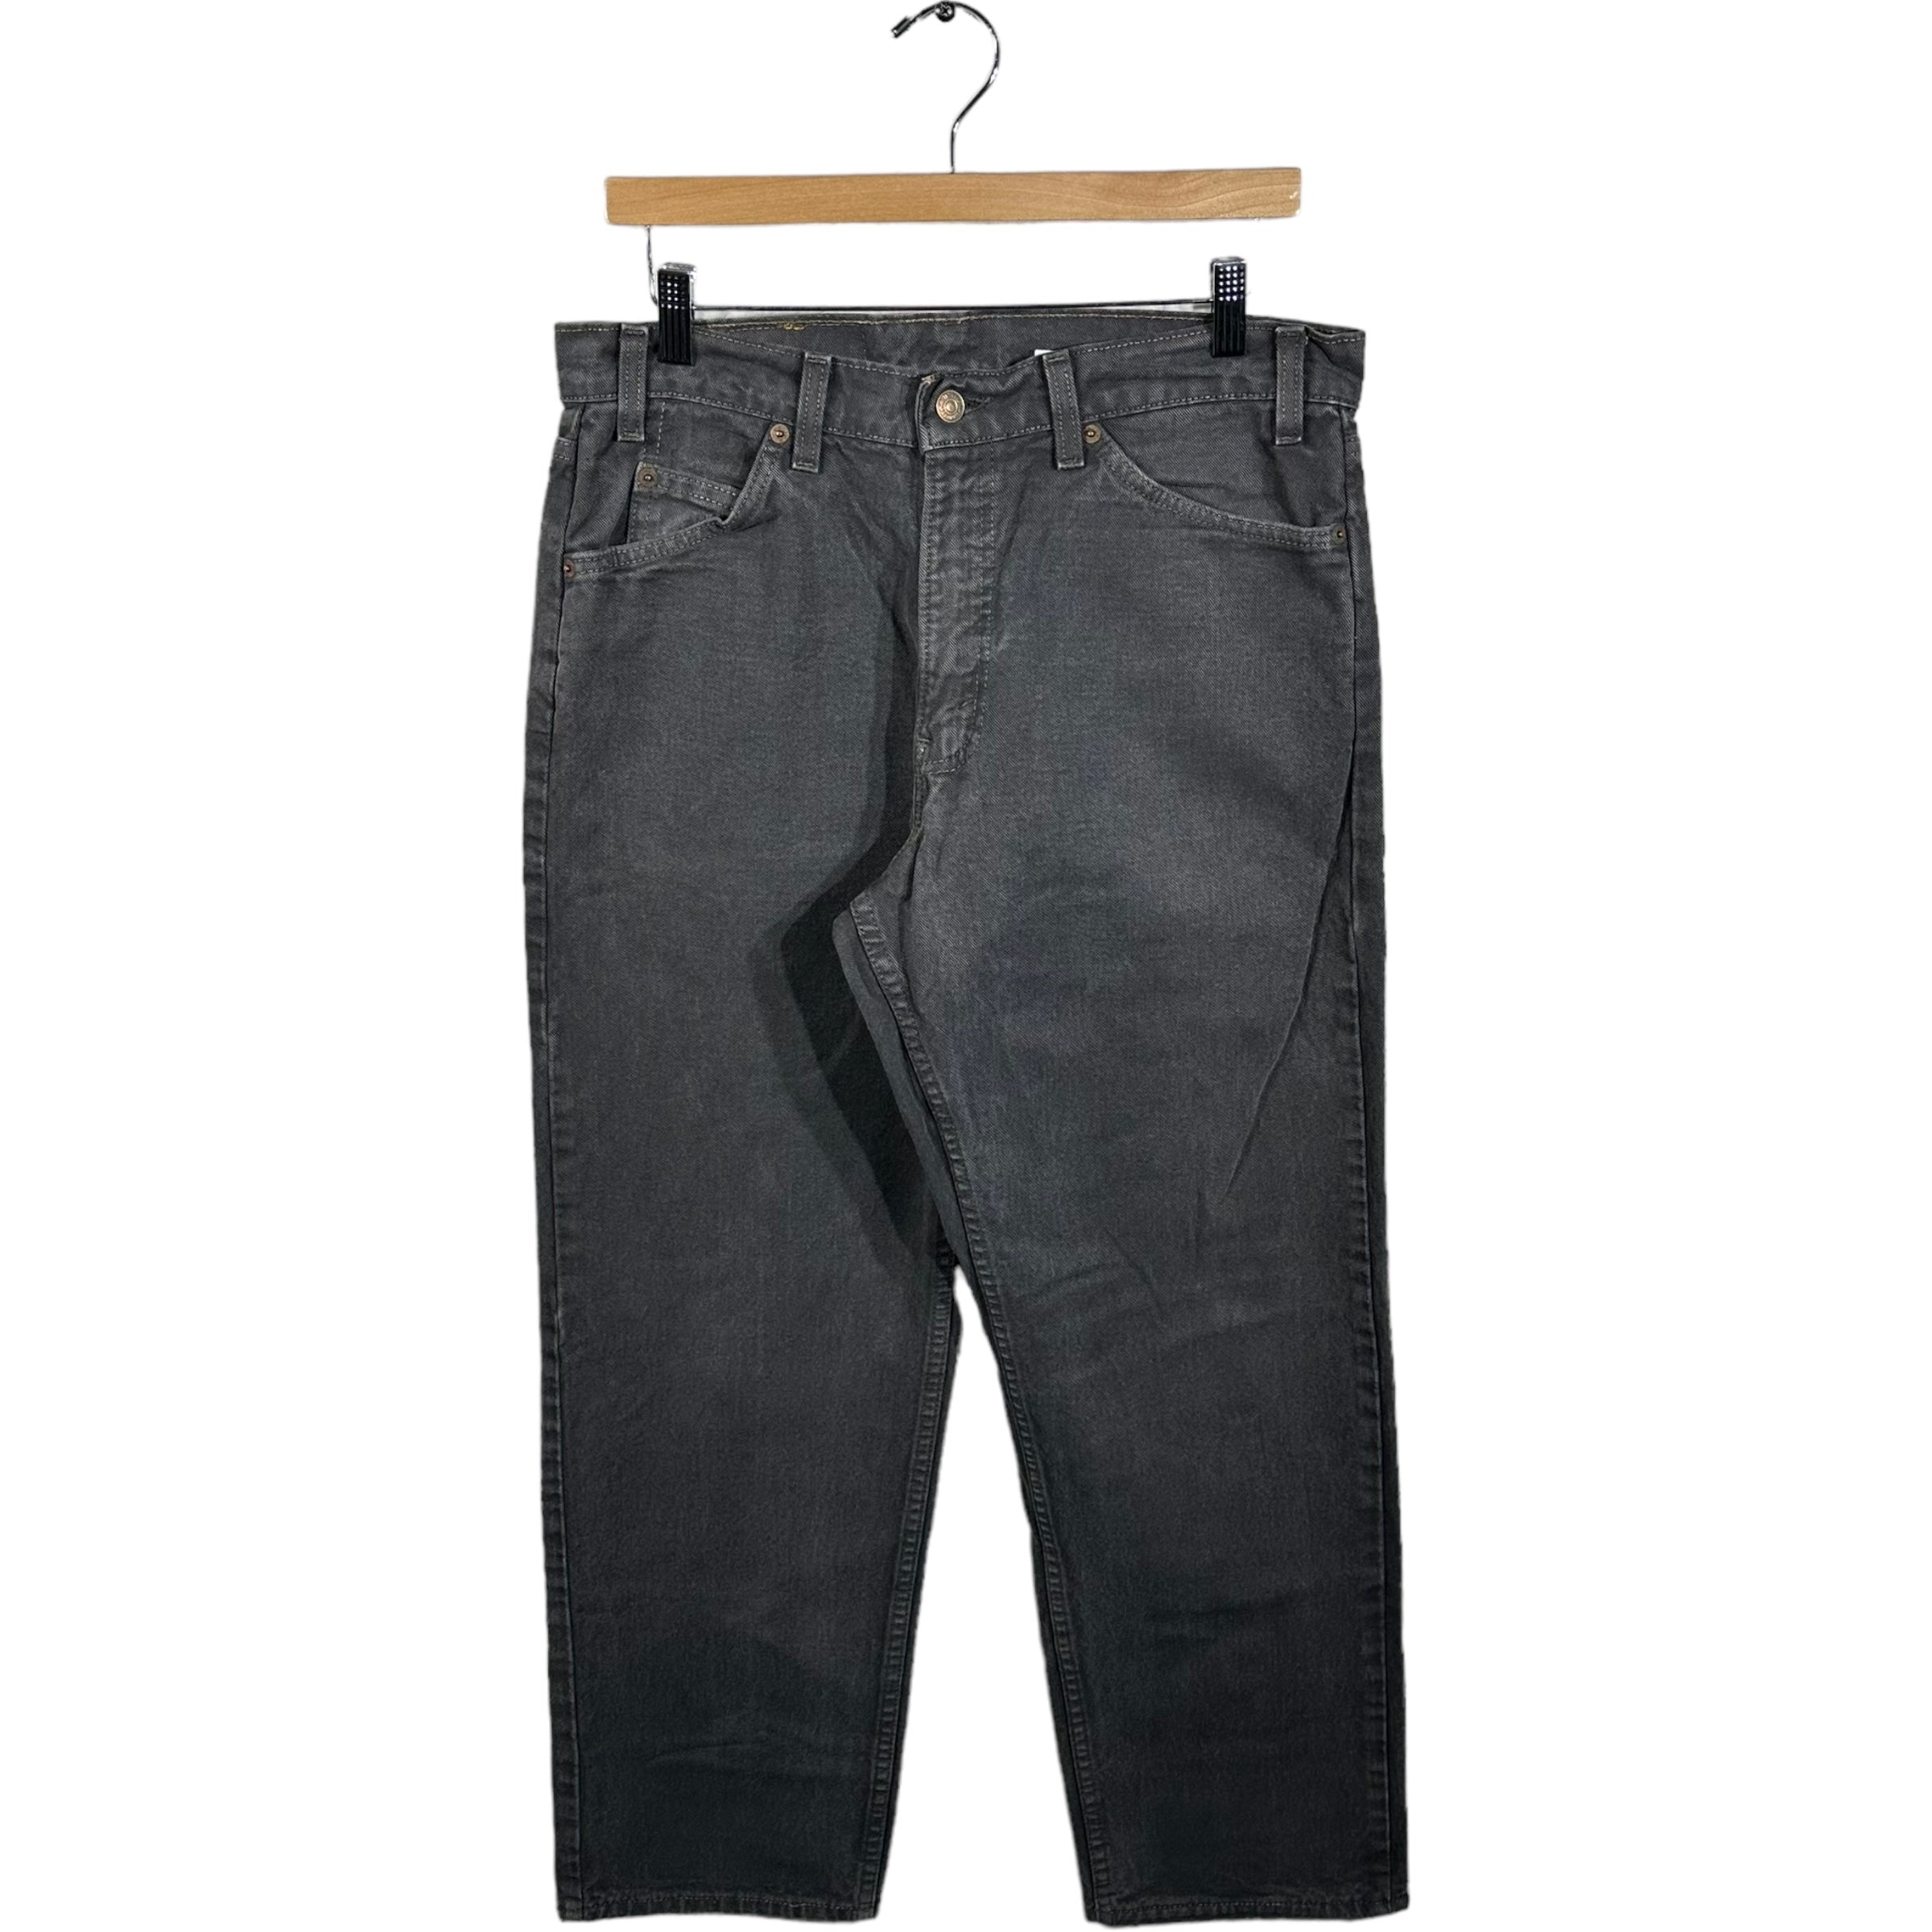 Vintage Levi's 565 Denim Jeans